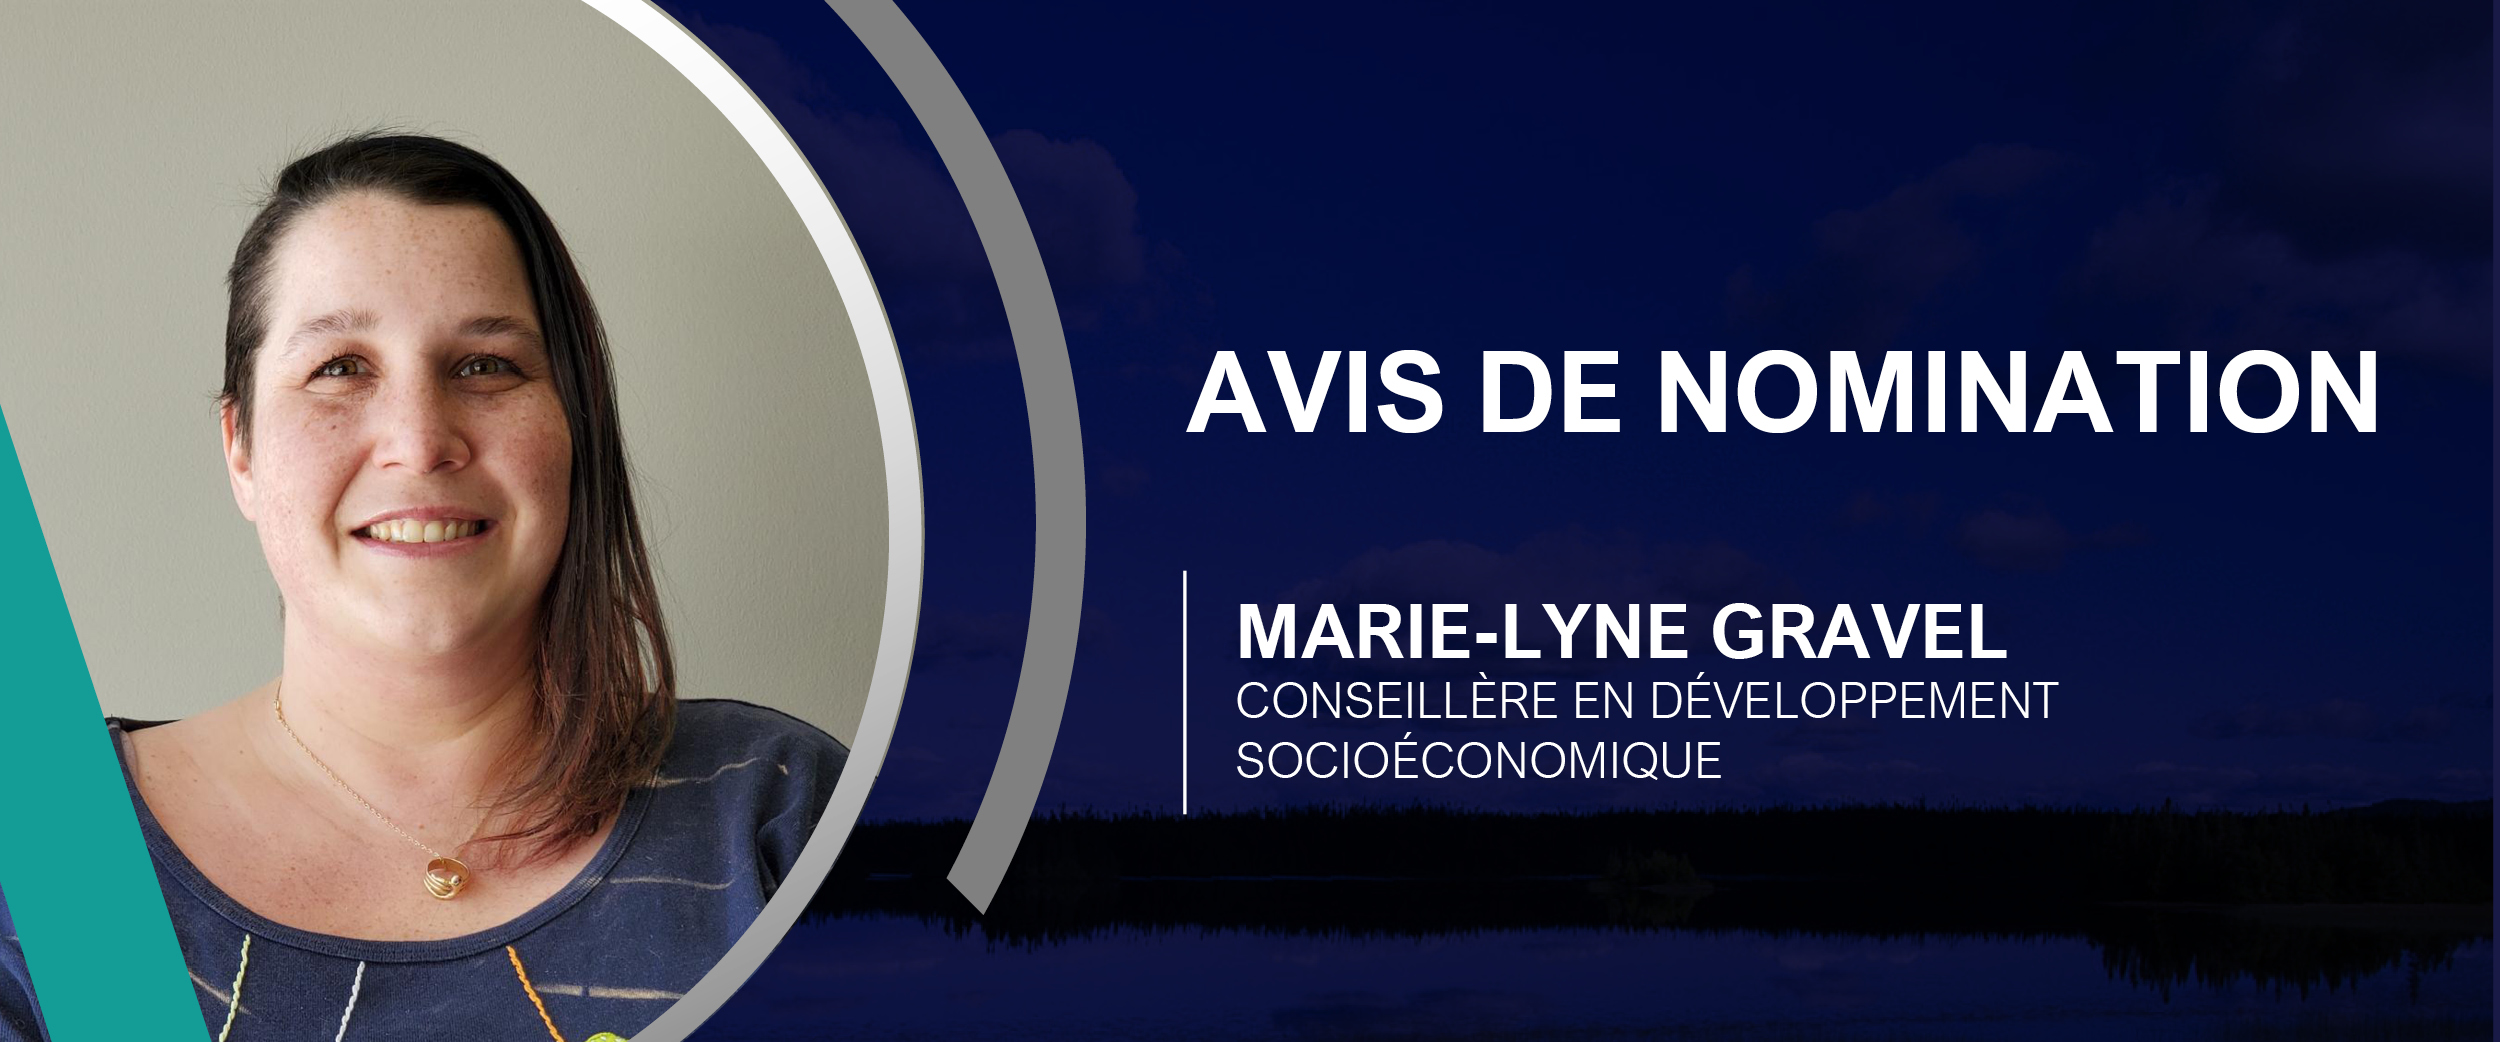 Avis nomination Marie-Lyne Gravel